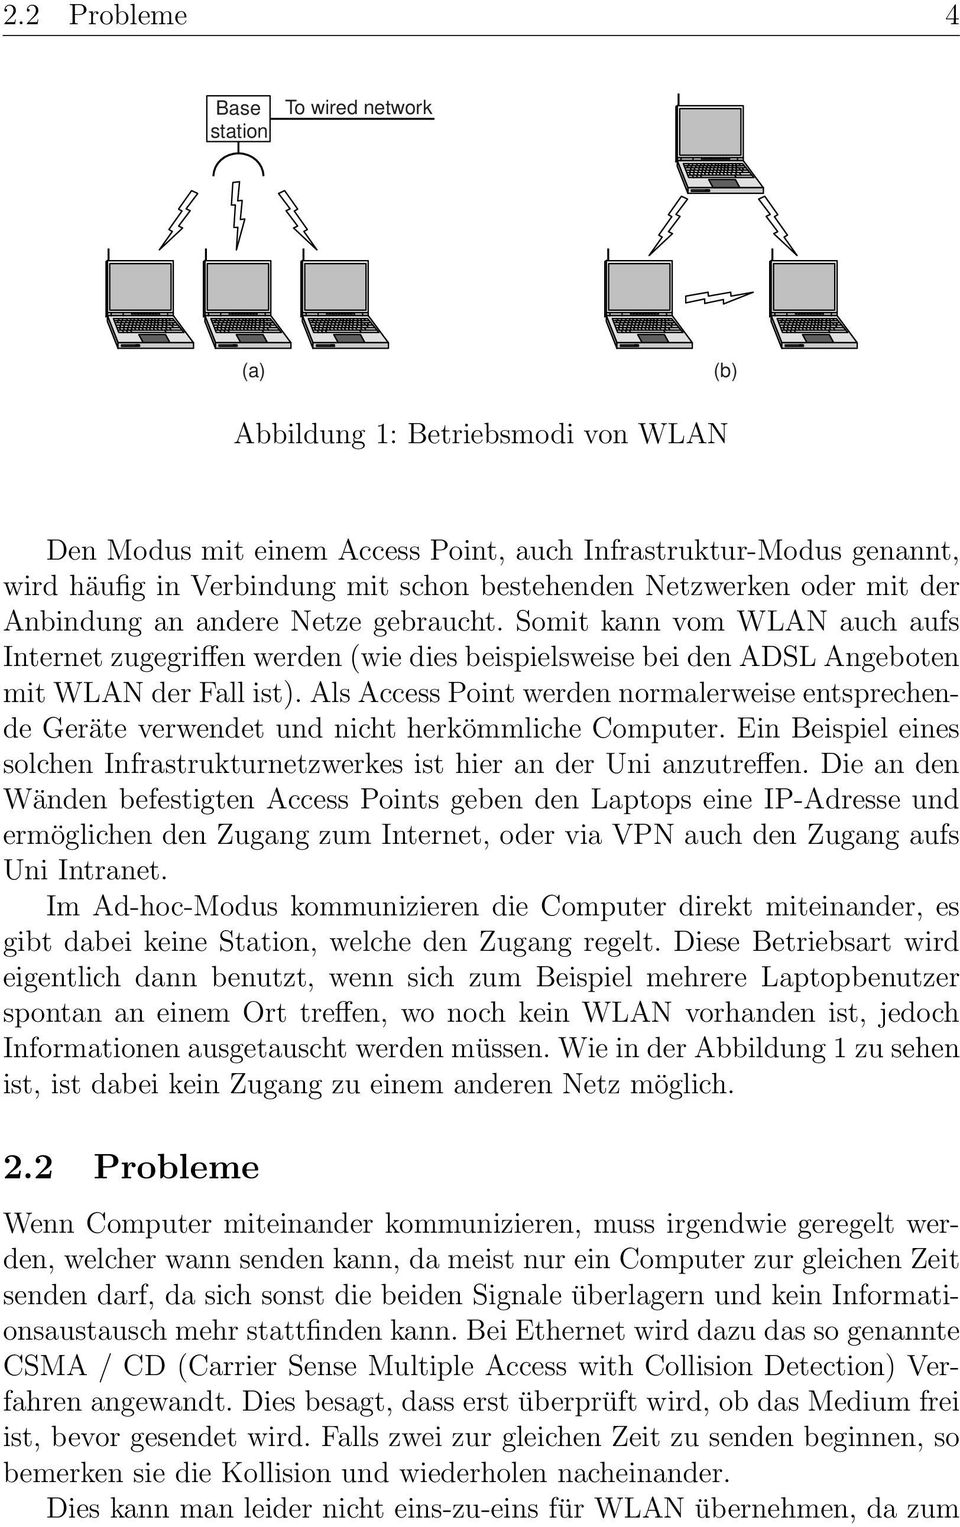 Somit kann vom WLAN auch aufs Internet zugegriffen werden (wie dies beispielsweise bei den ADSL Angeboten mit WLAN der Fall ist).